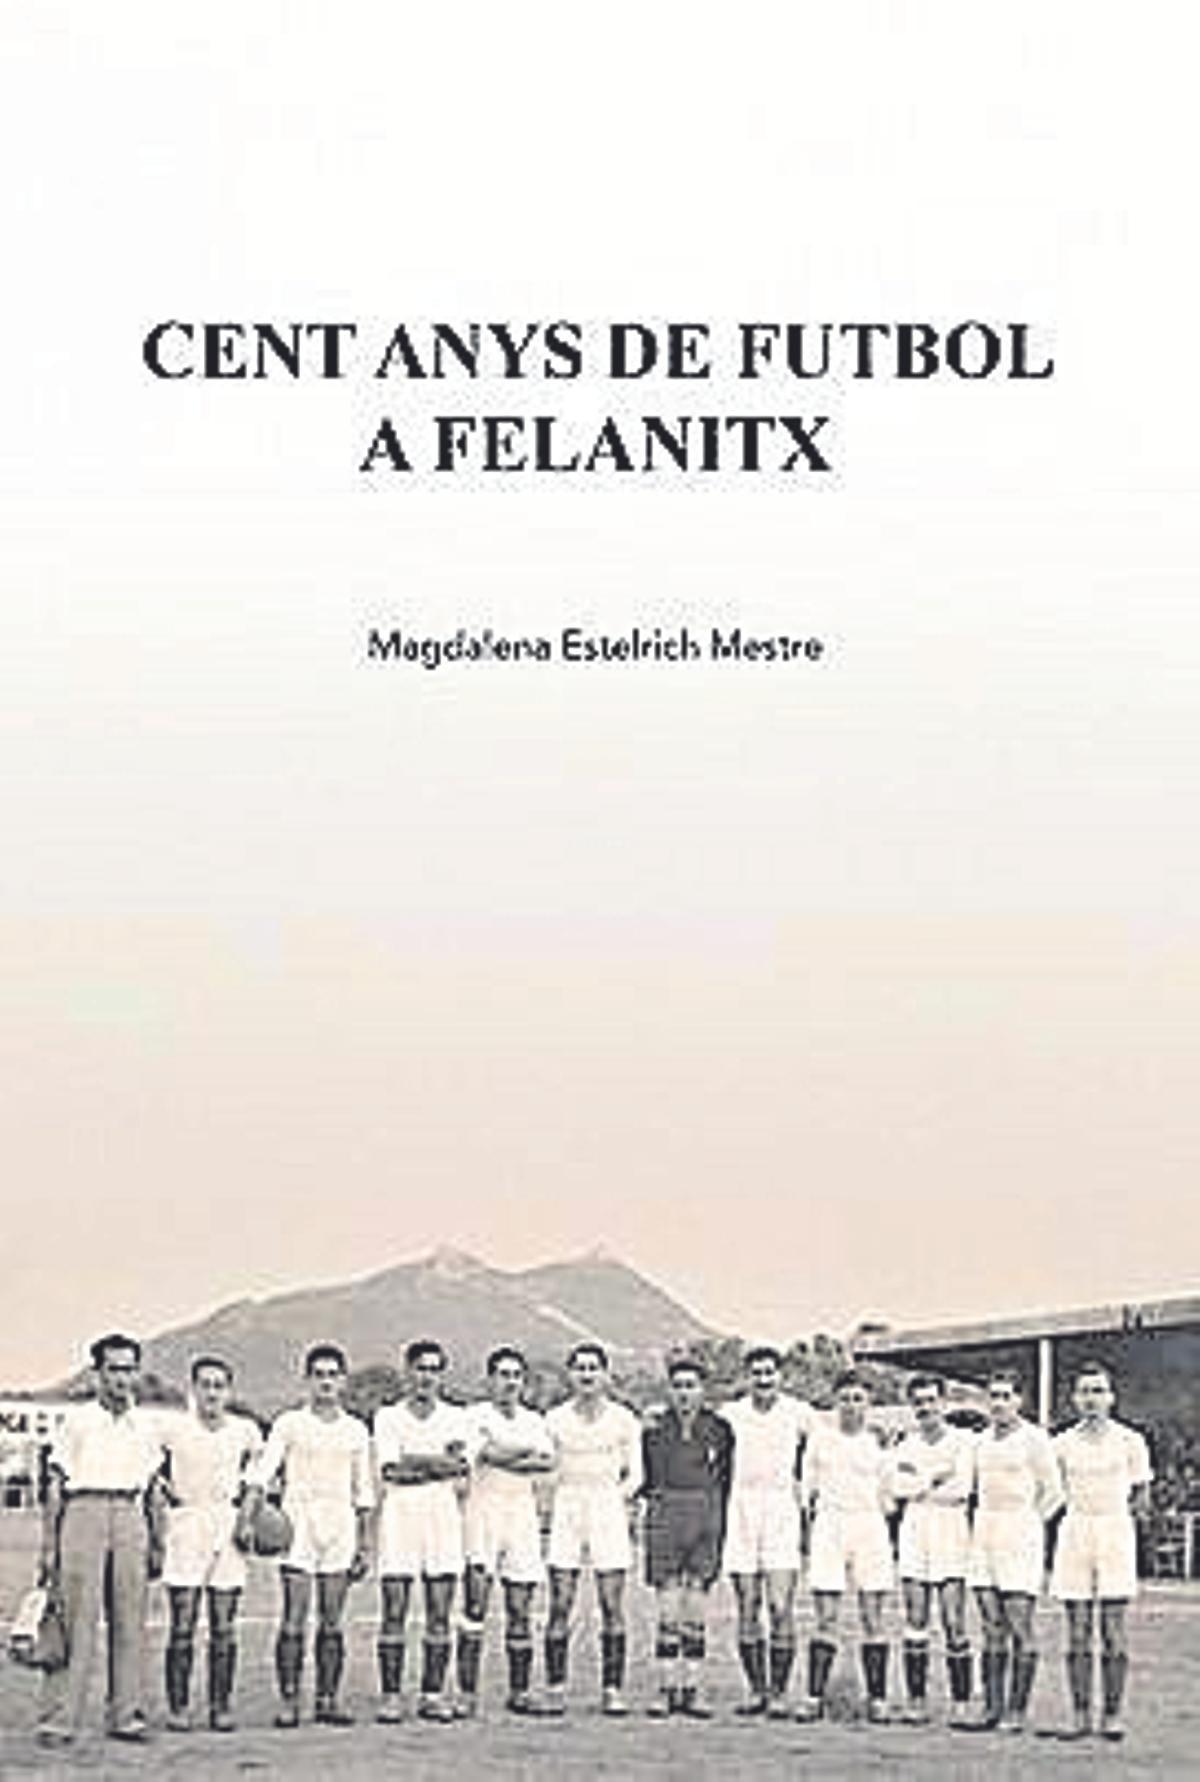 Portada del llibre 'Cent anys de futbol a Felanitx', de Magdalena Estelrich. Ajuntament de Felanitx